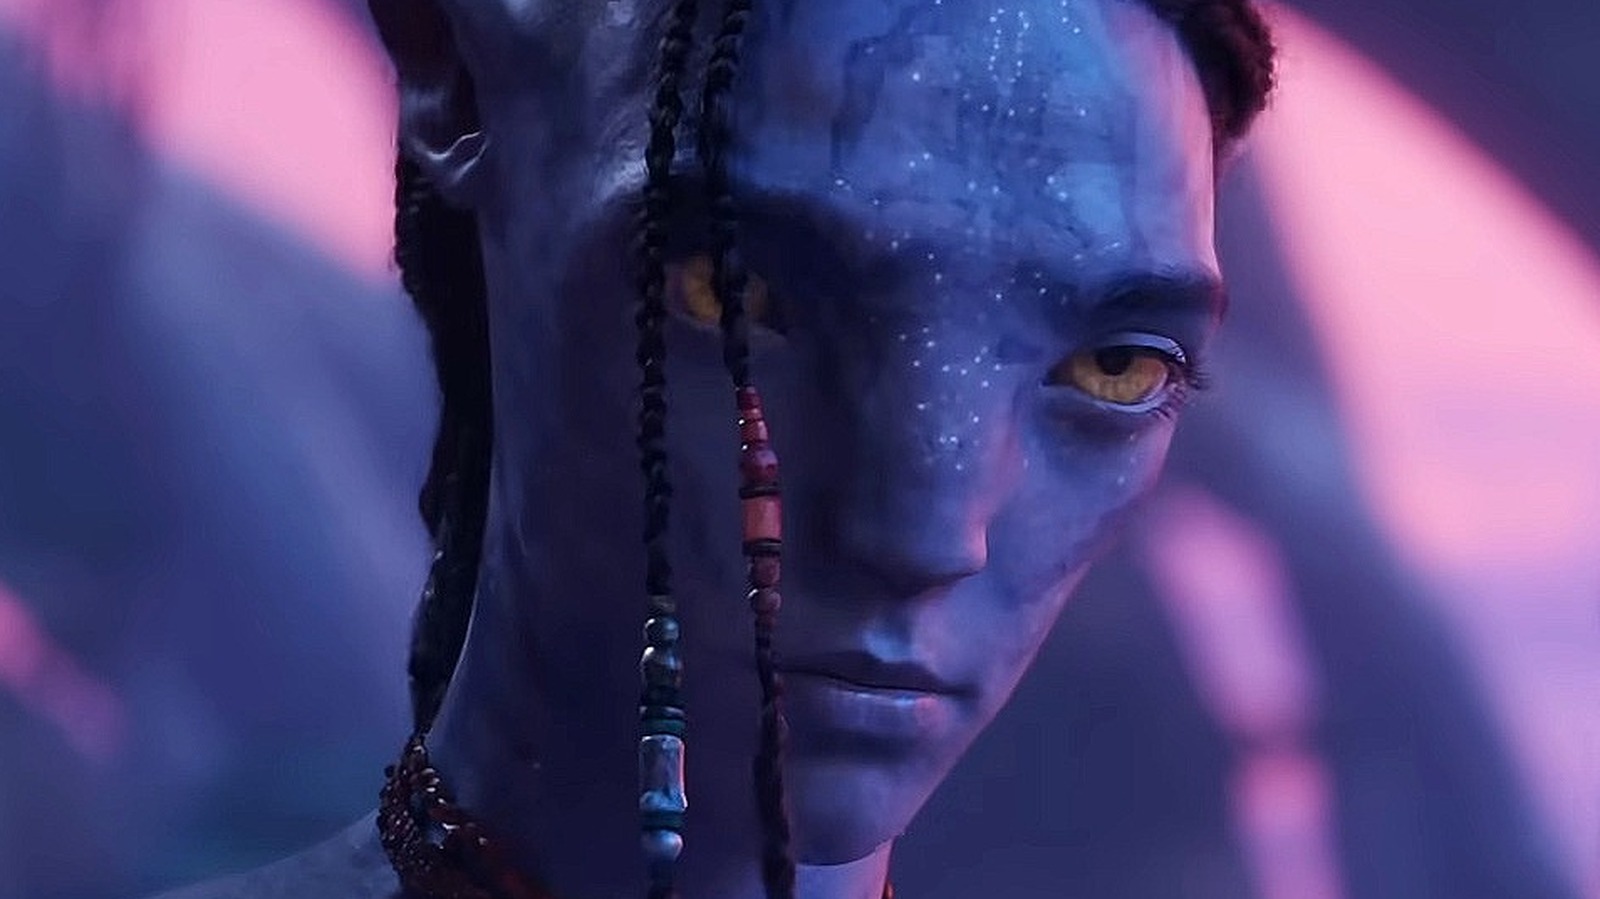 Avatar 2 Plot Details Shared By Producer Jon Landau